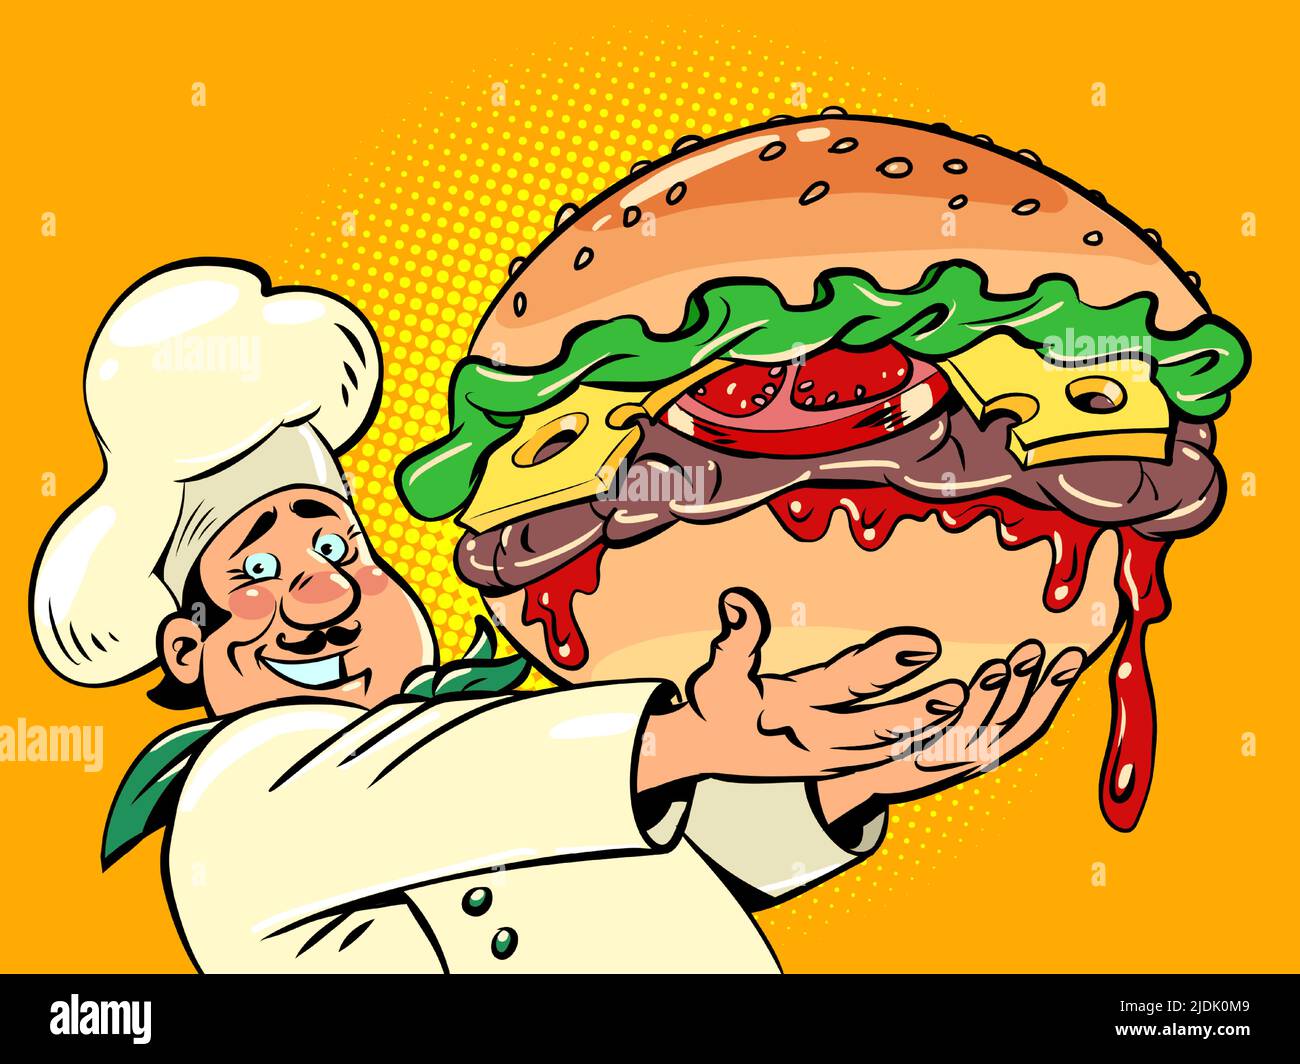 chef con una hamburguesa enorme, restaurante de comida rápida en la calle. Deliciosa hamburguesa de queso. Ilustración de dibujo a mano retro de cómic Ilustración del Vector